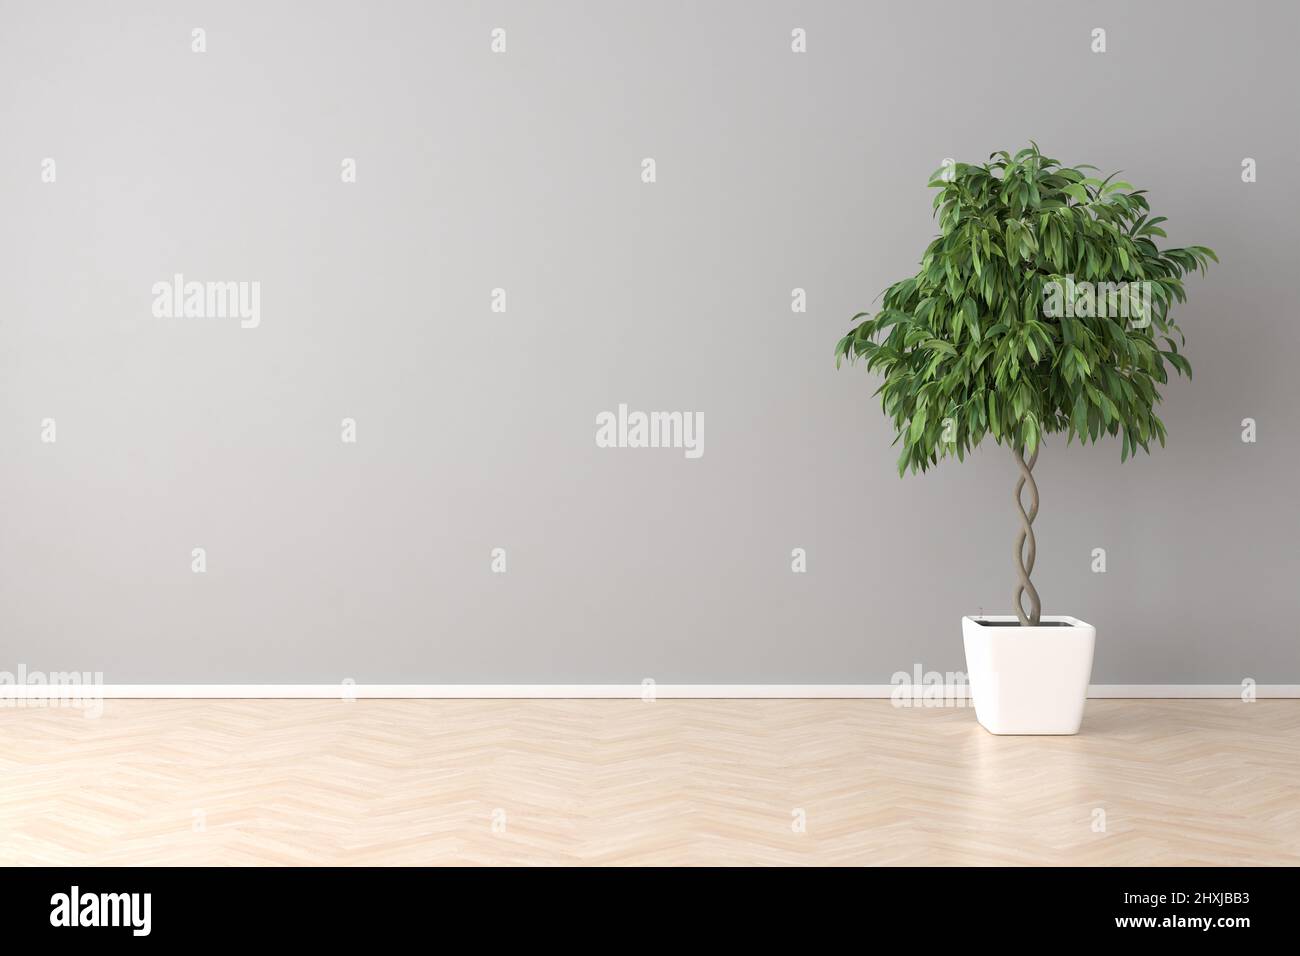 Großer Zimmeraufbau. Ein Ficus-Baum in einem leeren Raum mit Hartholzboden und einer leeren Wand. Stockfoto